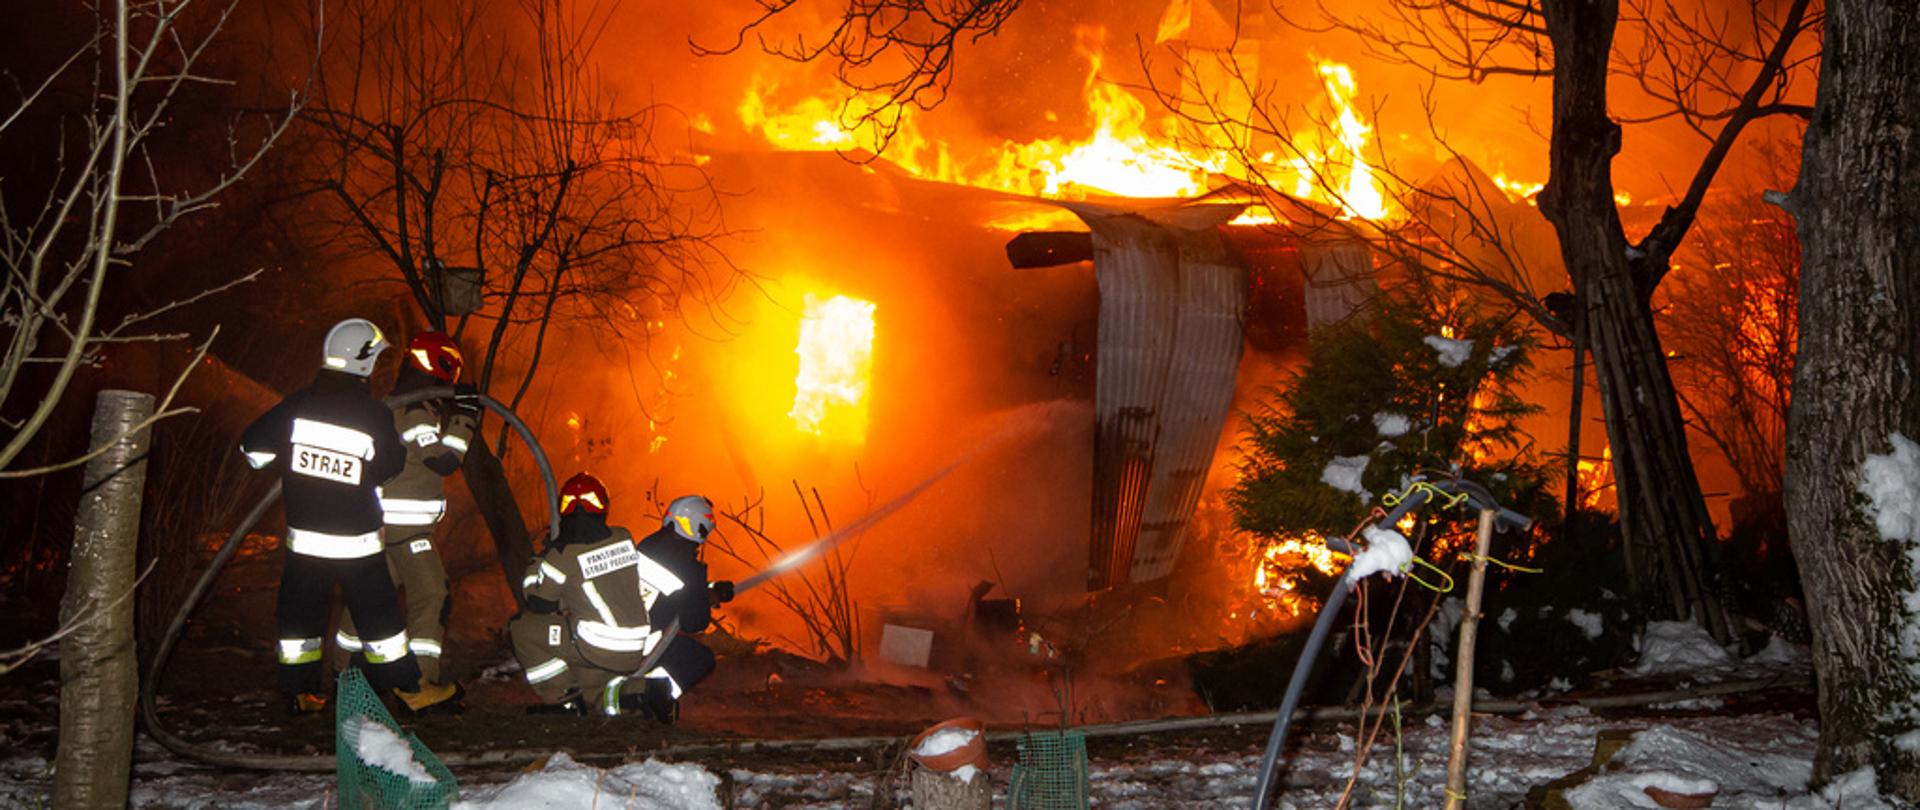 Na zdjęciu w porze nocnej widoczni czterej strażacy gaszący pożar budynku mieszkalnego. Warunki zimowe, śnieg, strażacy podają prąd wody w natarciu na palący się dom.